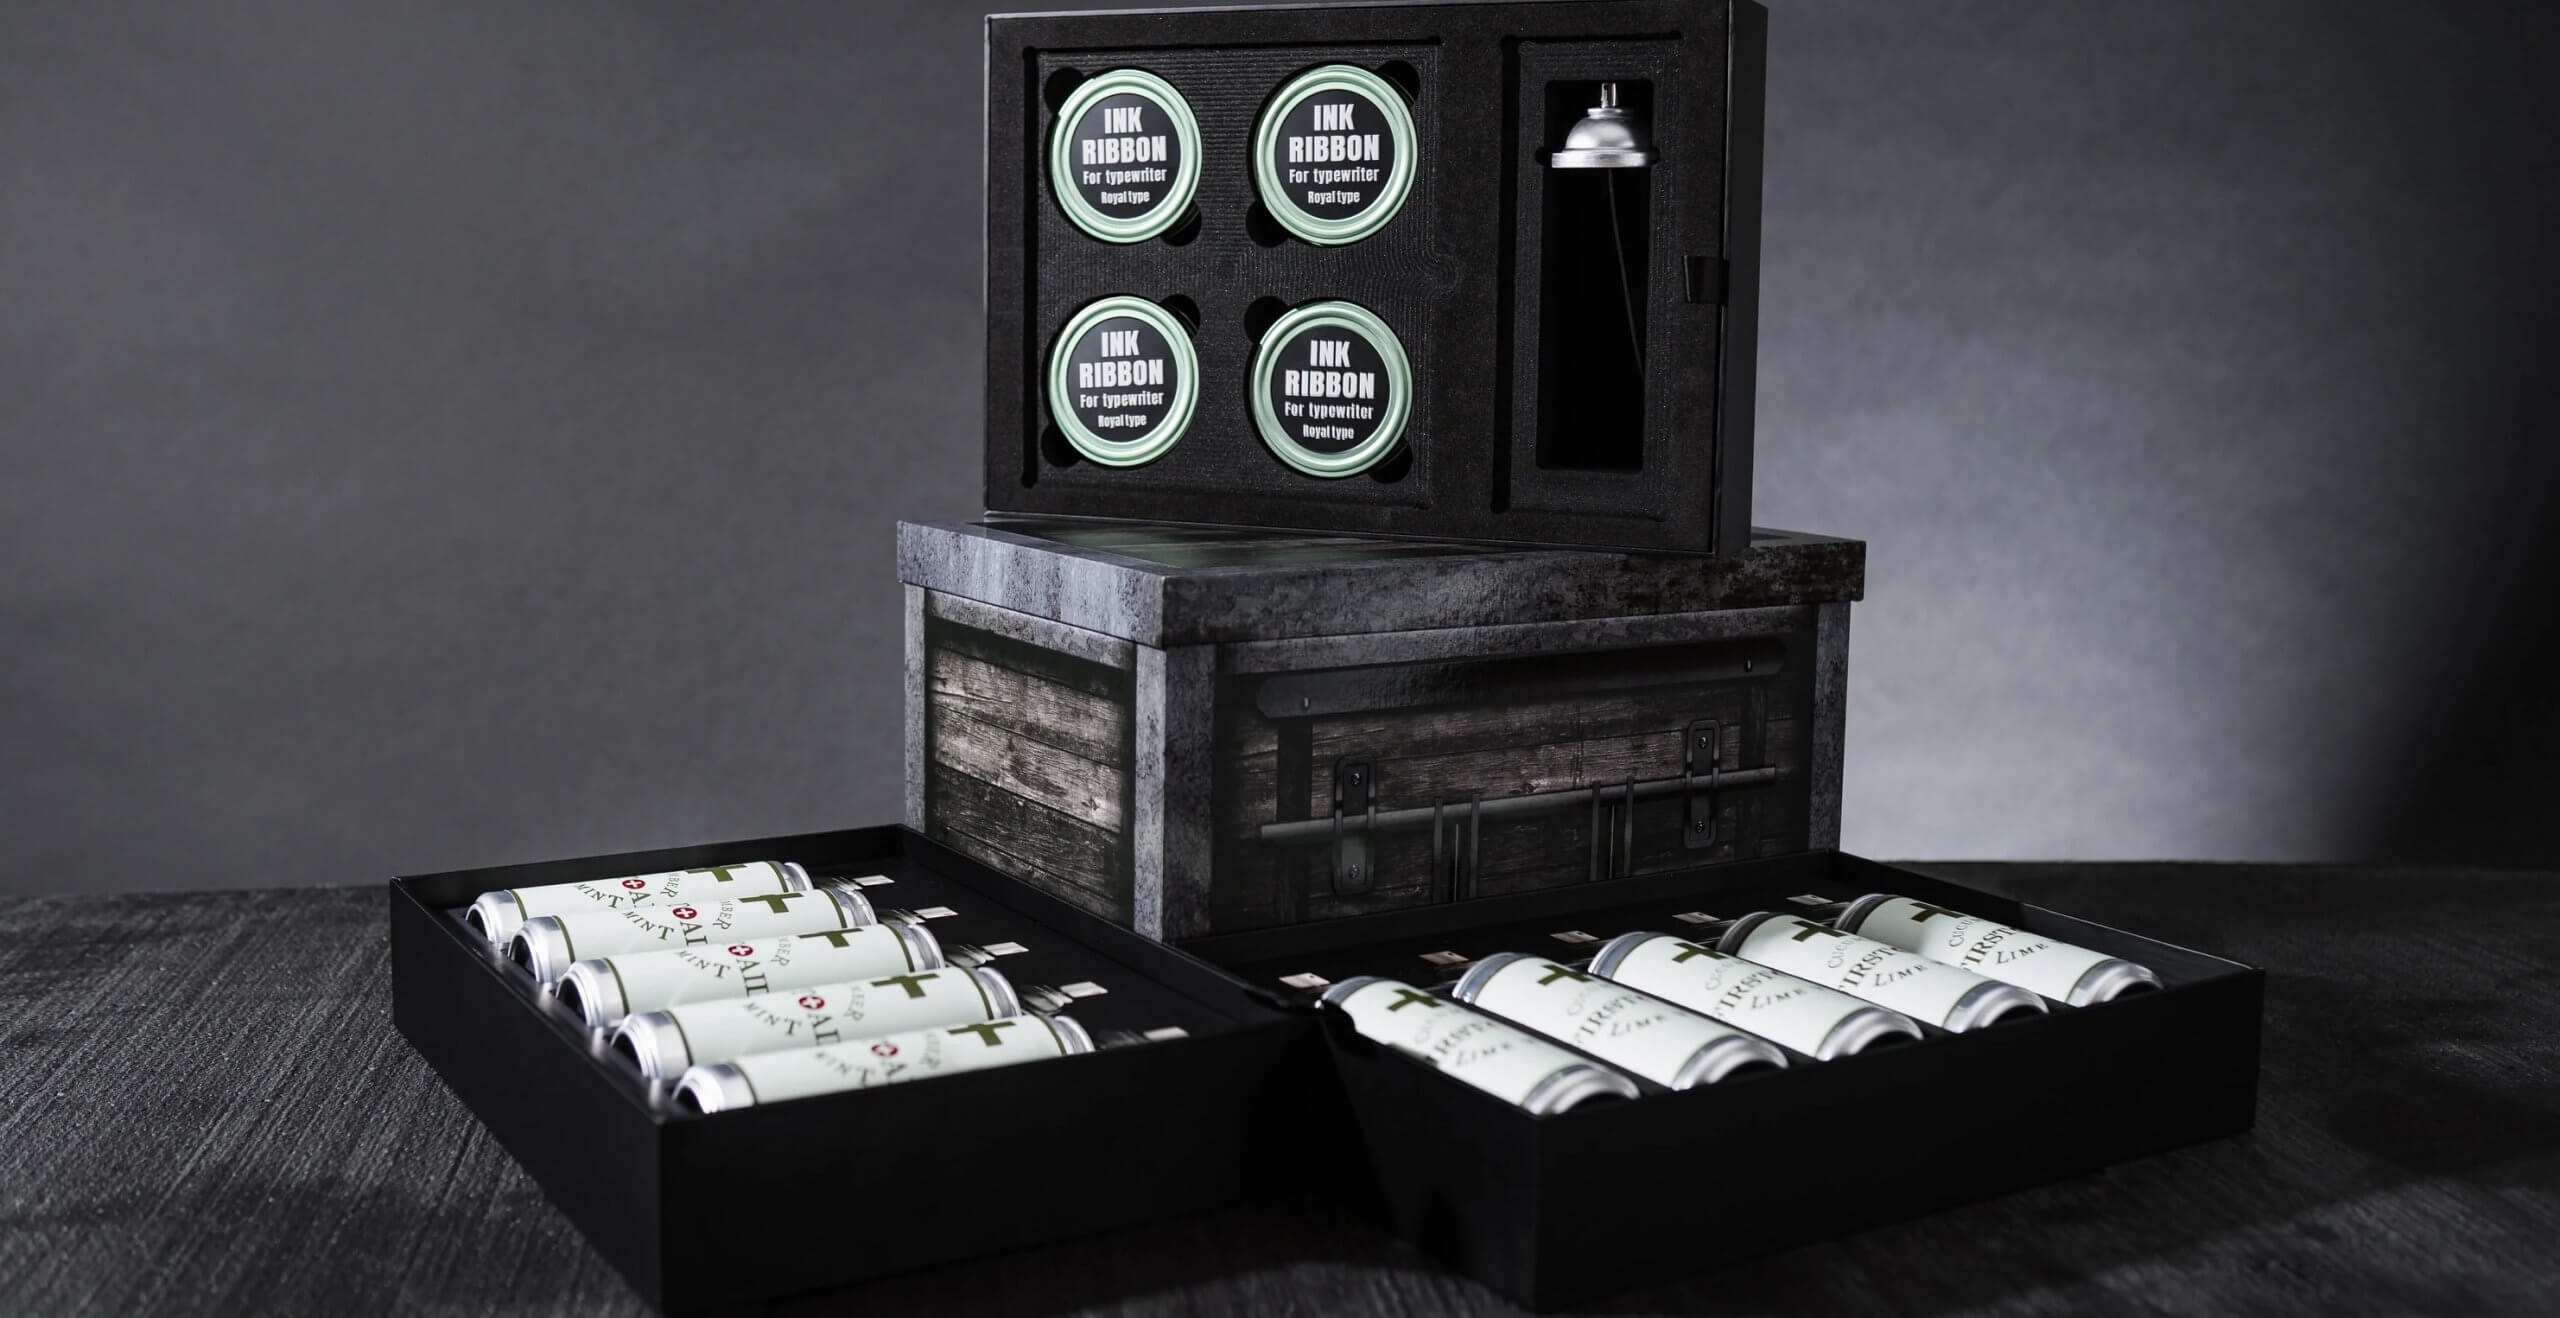 Resident Evil lanzará un pack de bebidas con su diseño de aerosoles